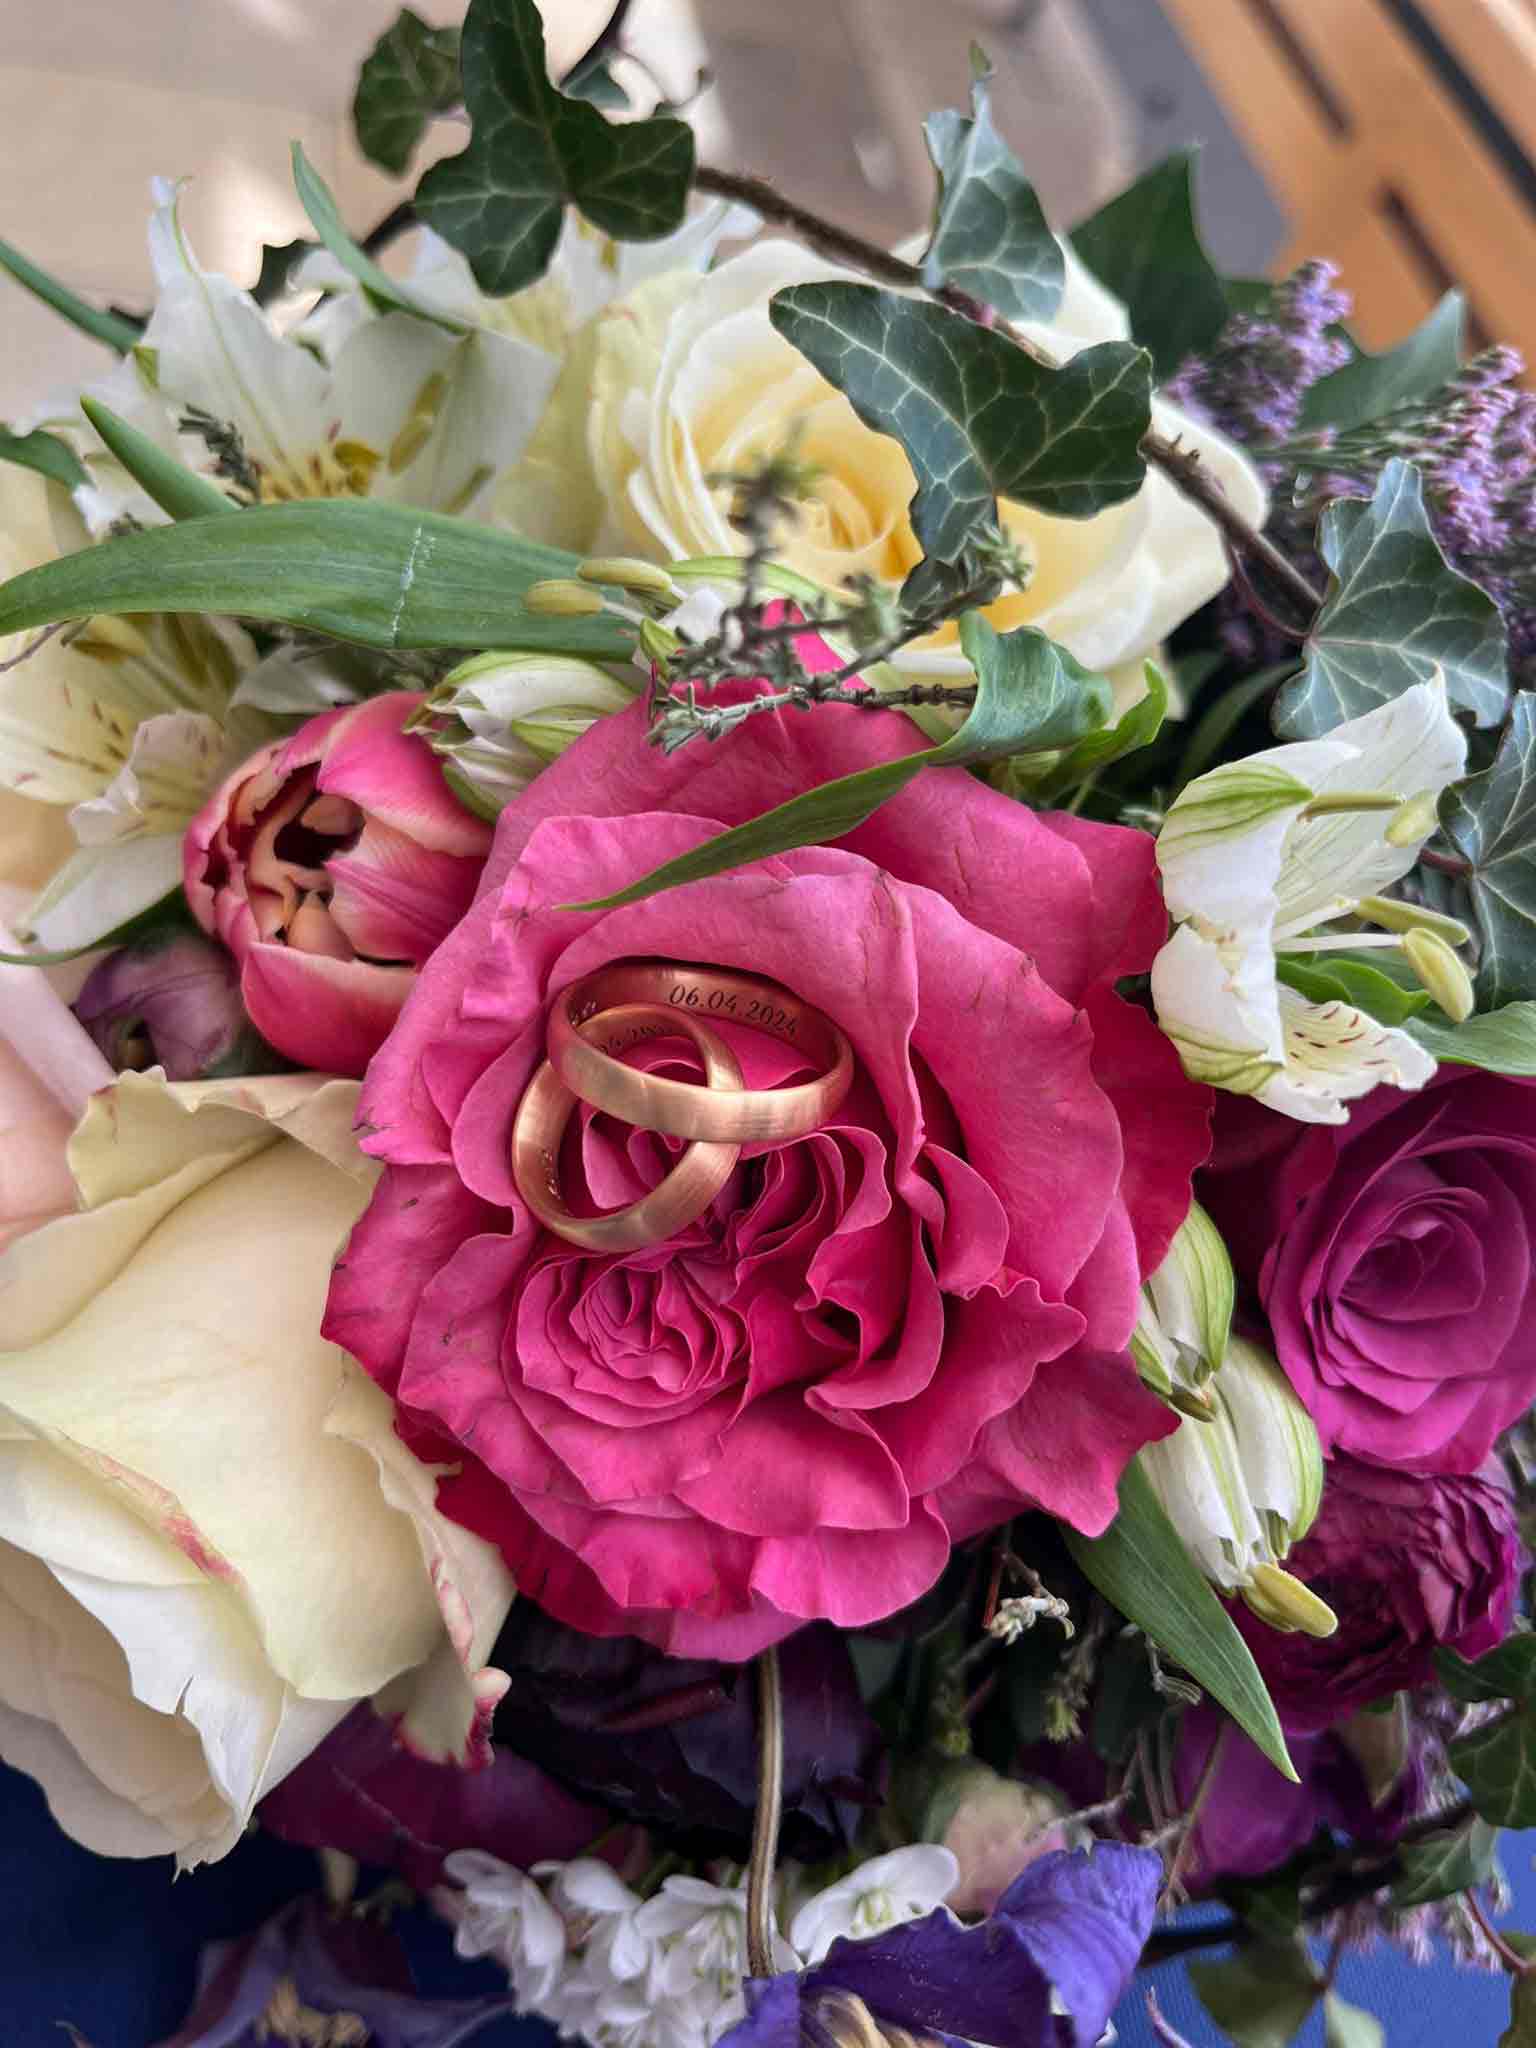 Brautstruß mit Rosen, in der Mitte liegen Eheringe aus FAIRMINED ECO GOLD